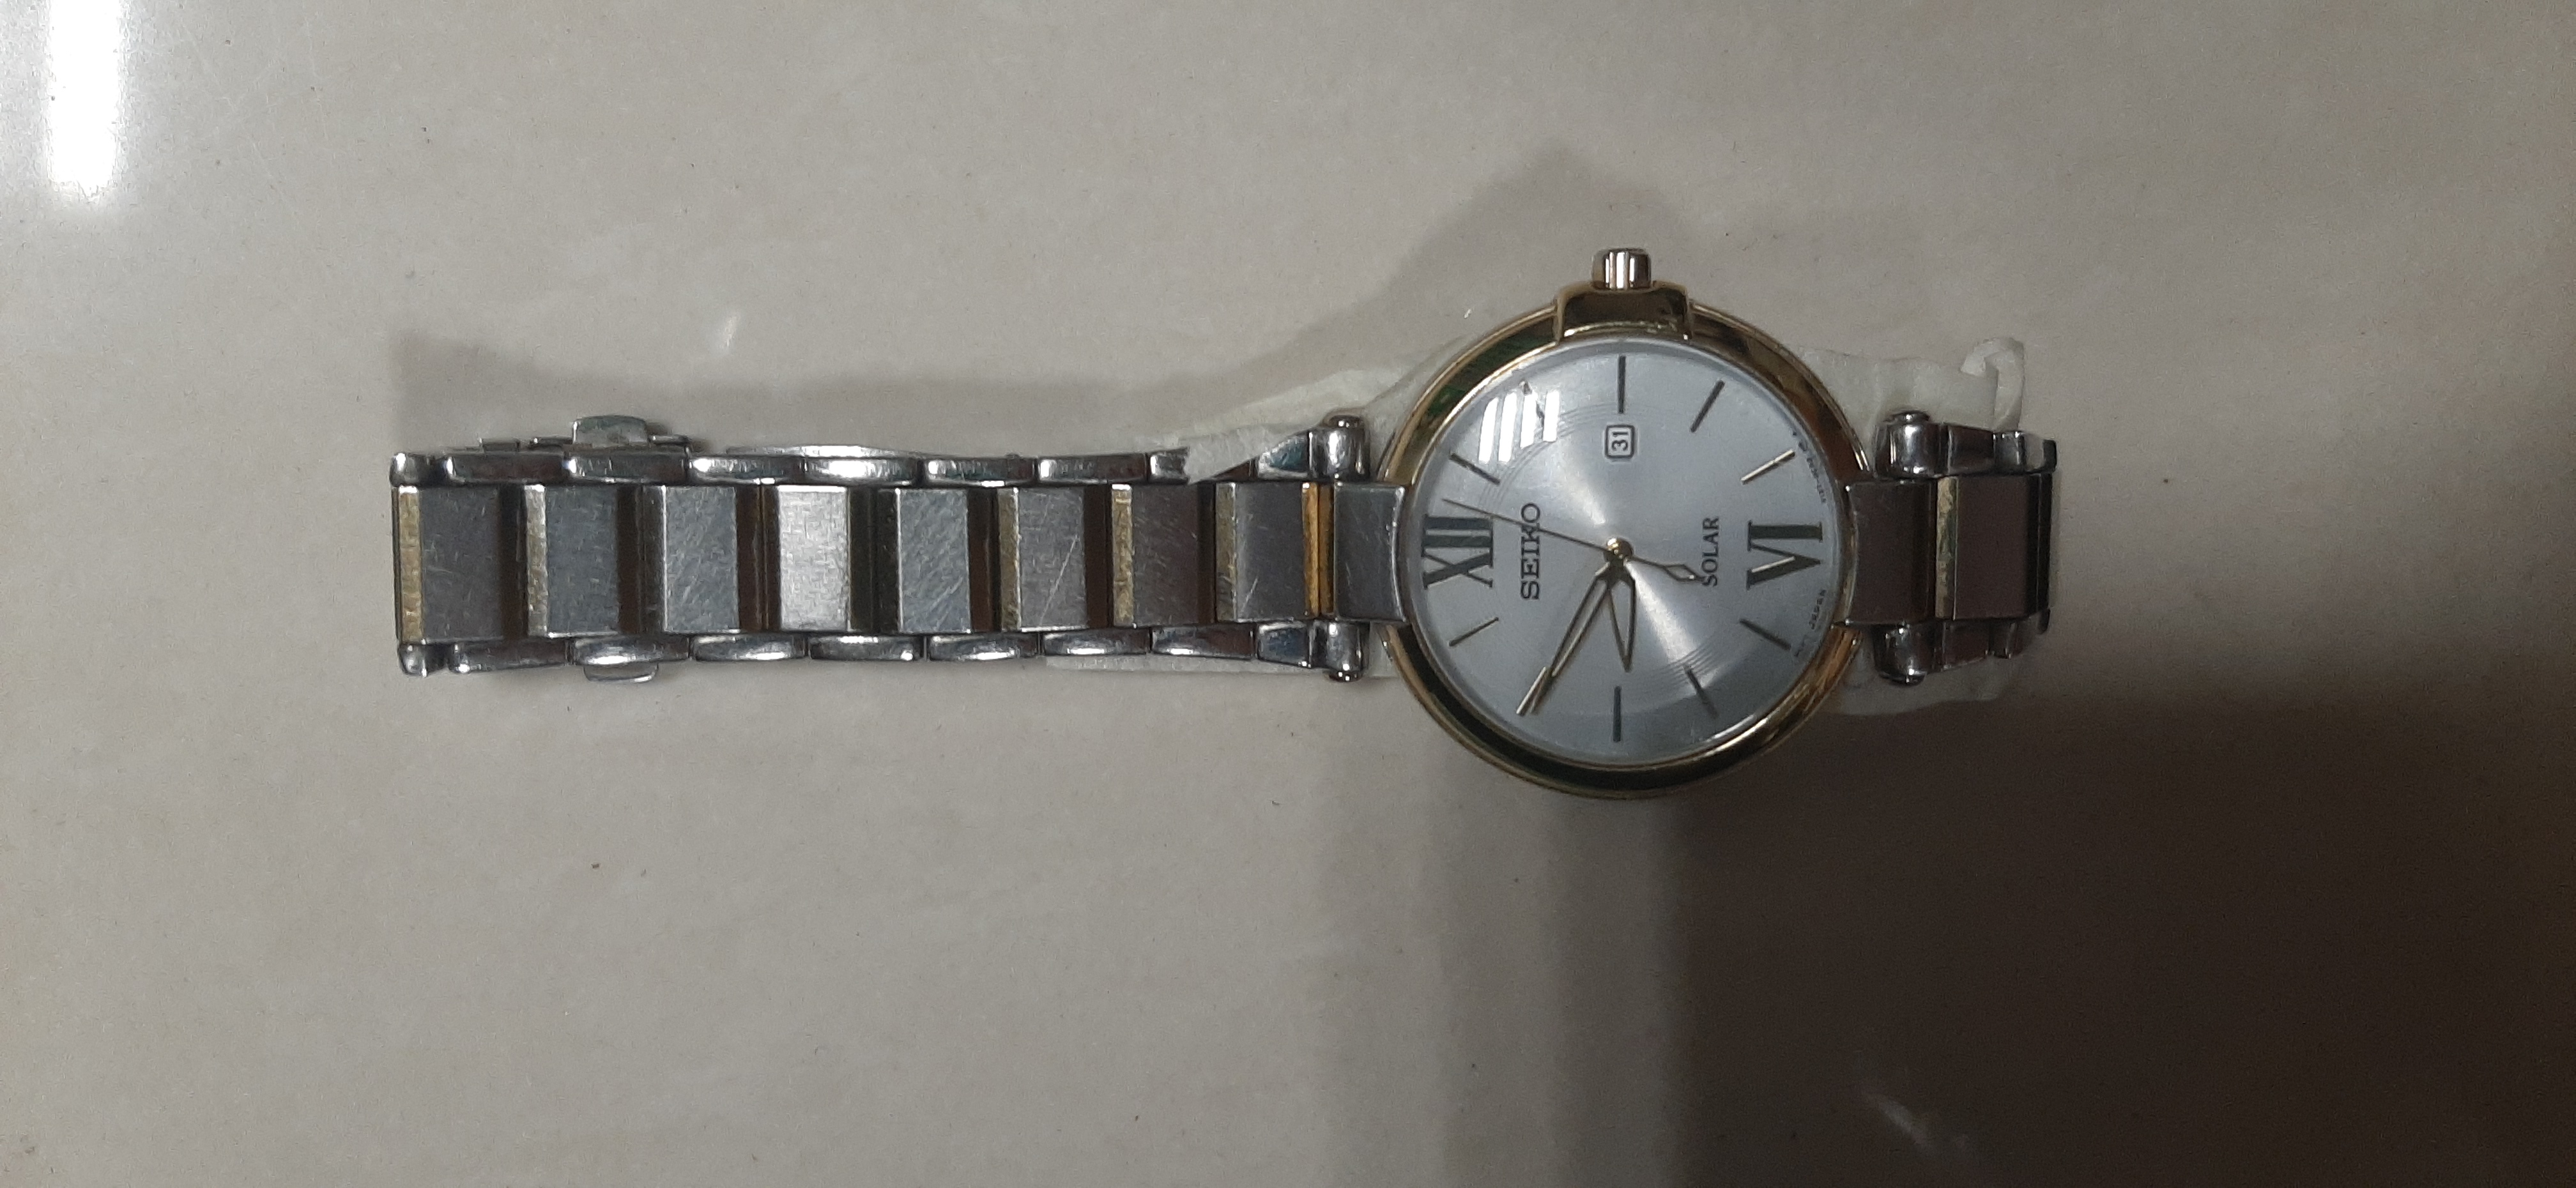 01 đồng hồ kim loại màu bạc hiệu SEIKO, khách quên ngày 29/07/022 - Cảng  hàng không Phú Quốc